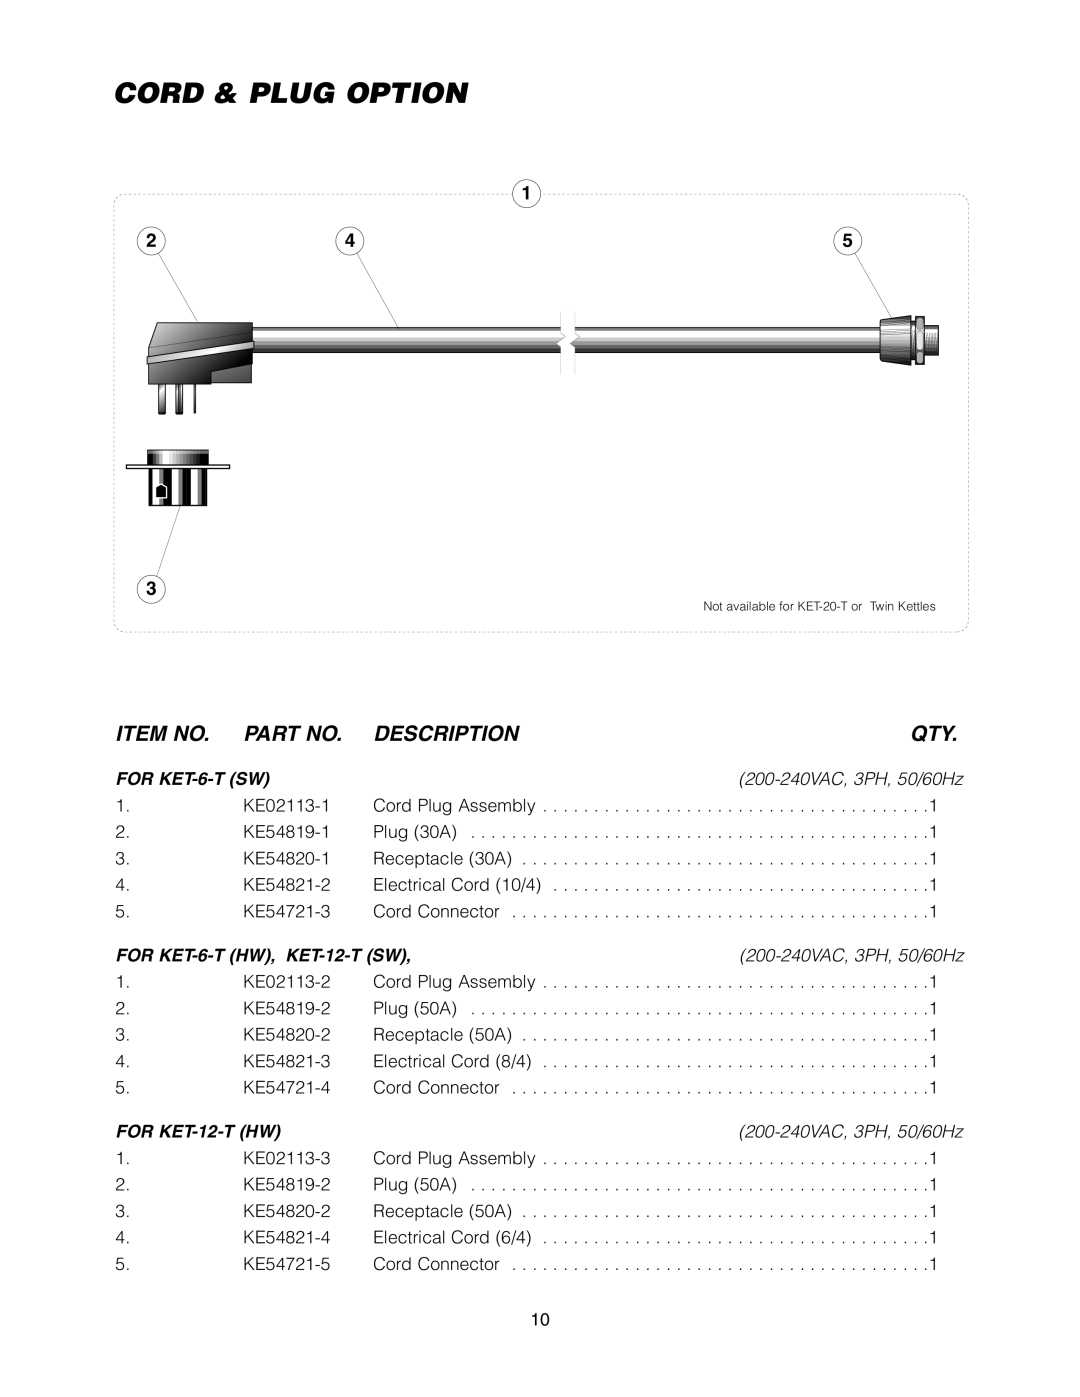 Cleveland Range KET-3-T manual Cord & Plug Option, Item No, Description, FOR KET-6-T SW, FOR KET-6-T HW, KET-12-T SW 